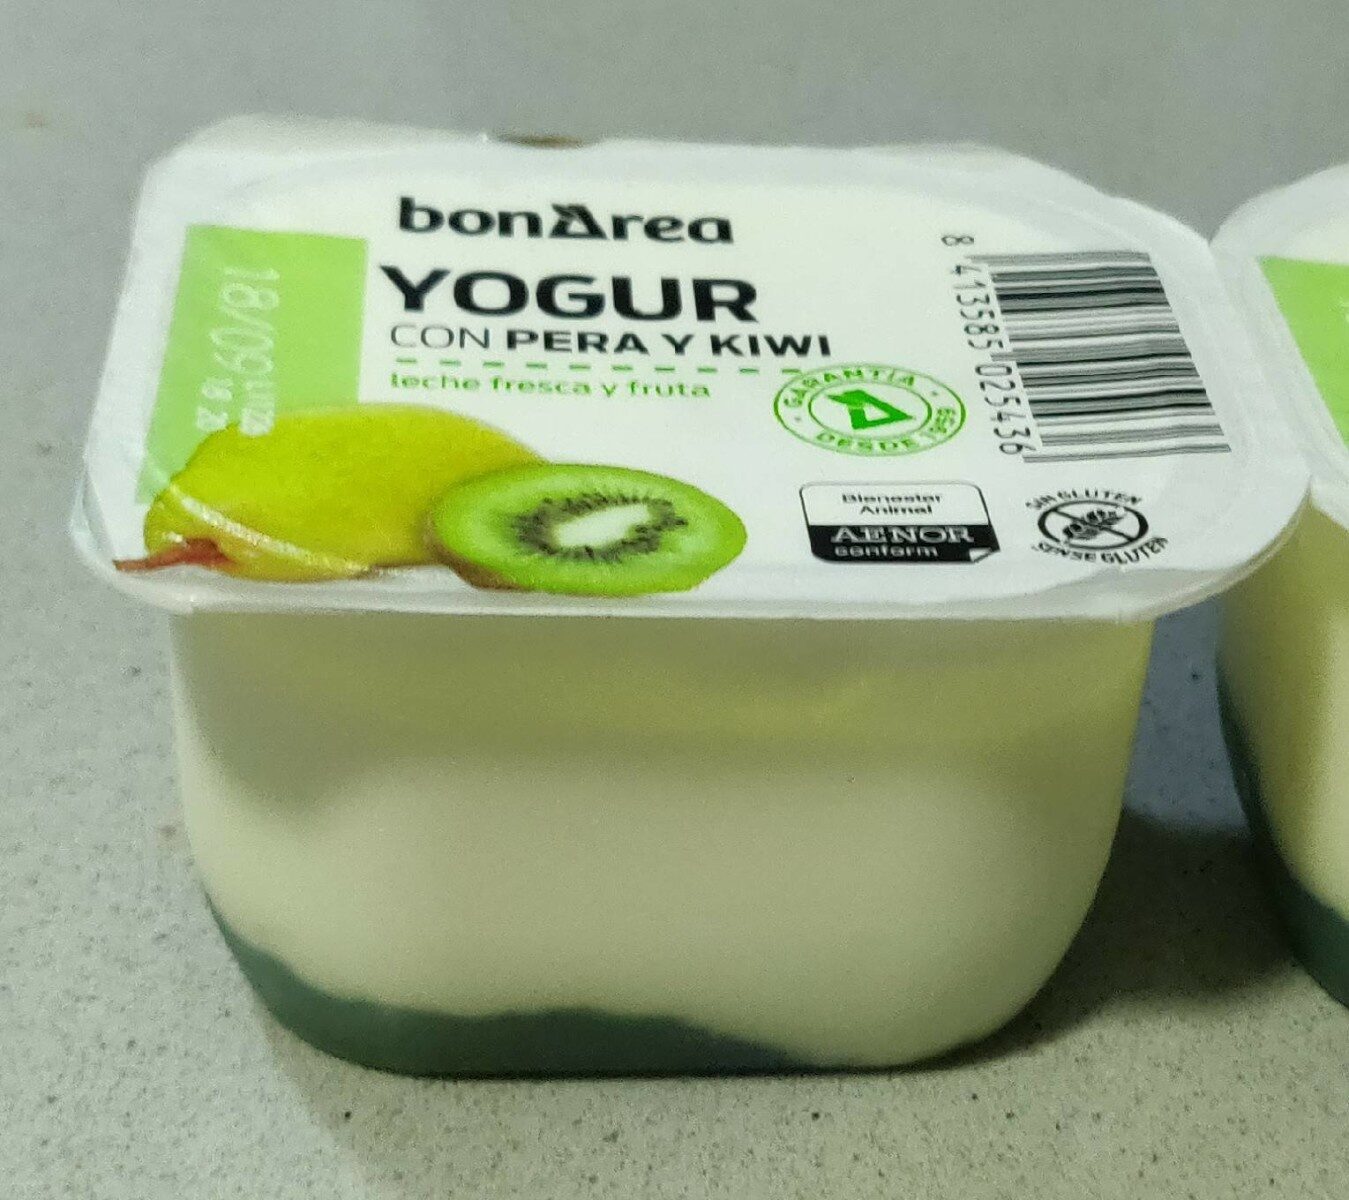 Yogur con pera y kiwi - Producte - es